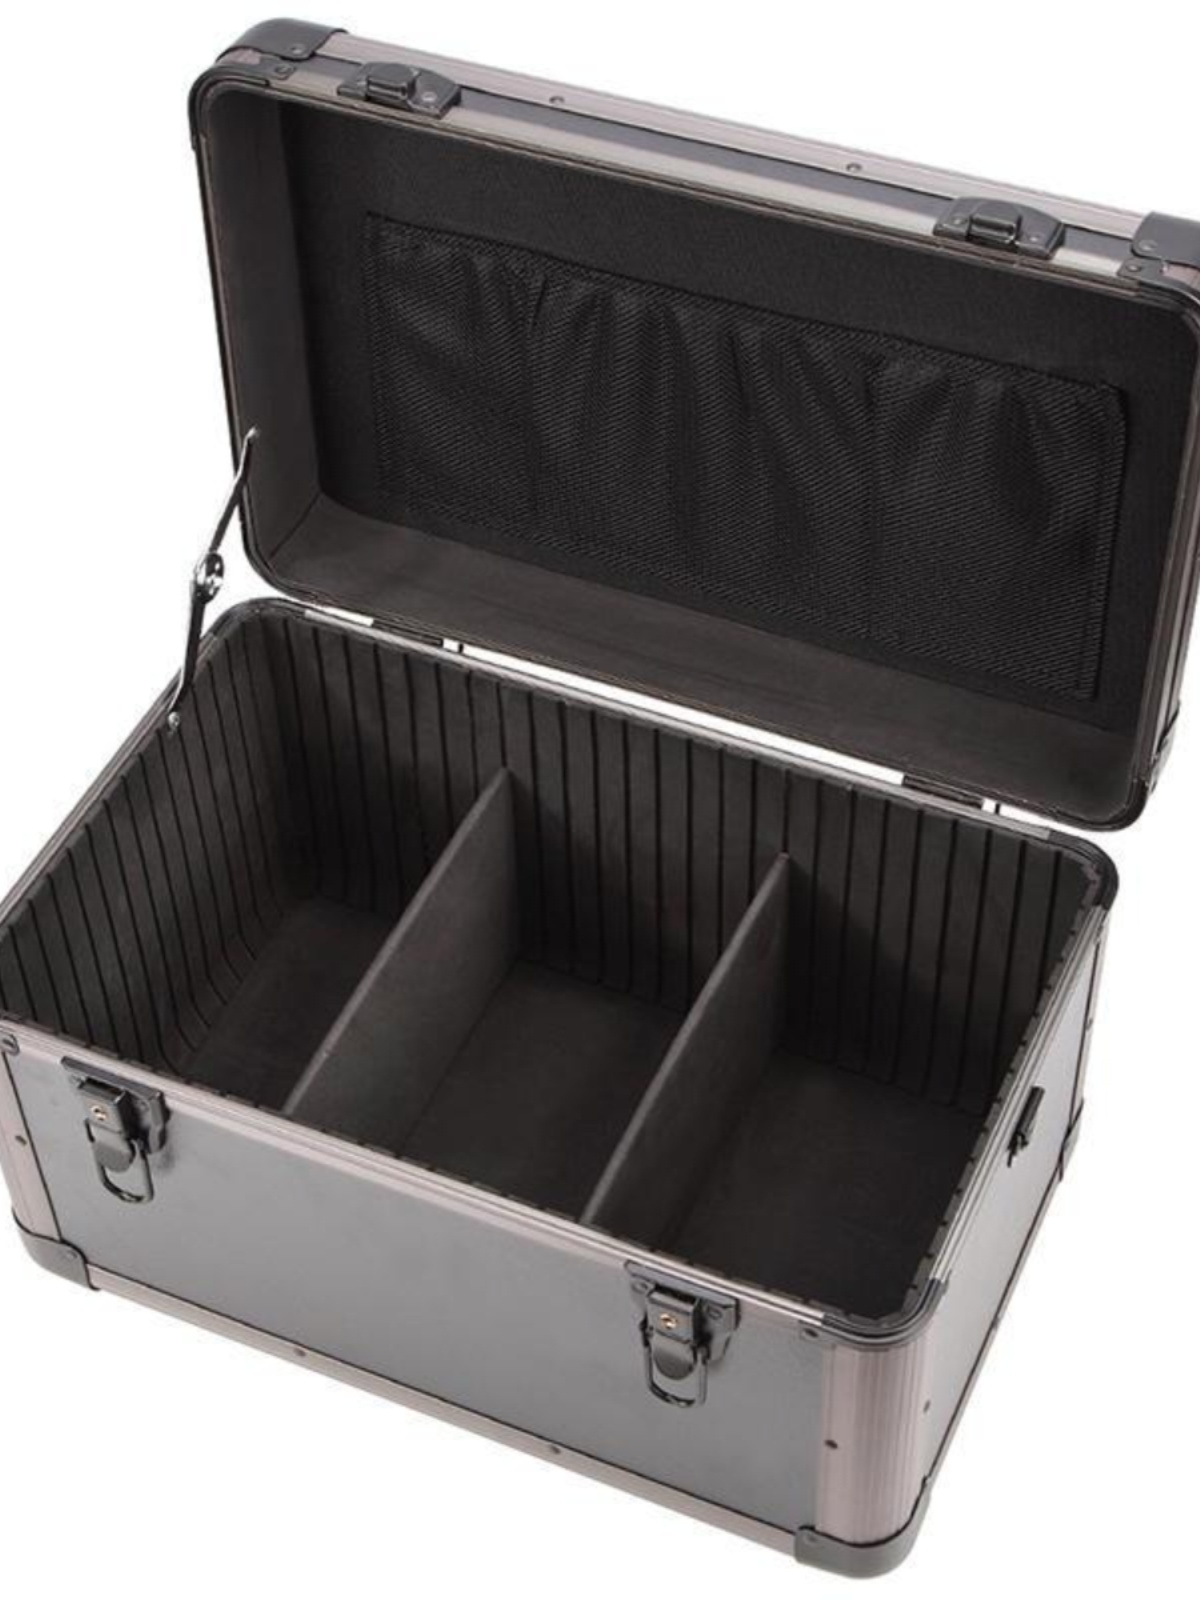 促销实验工具箱产品示范工具箱多功能水电工装修工具箱空箱手提式